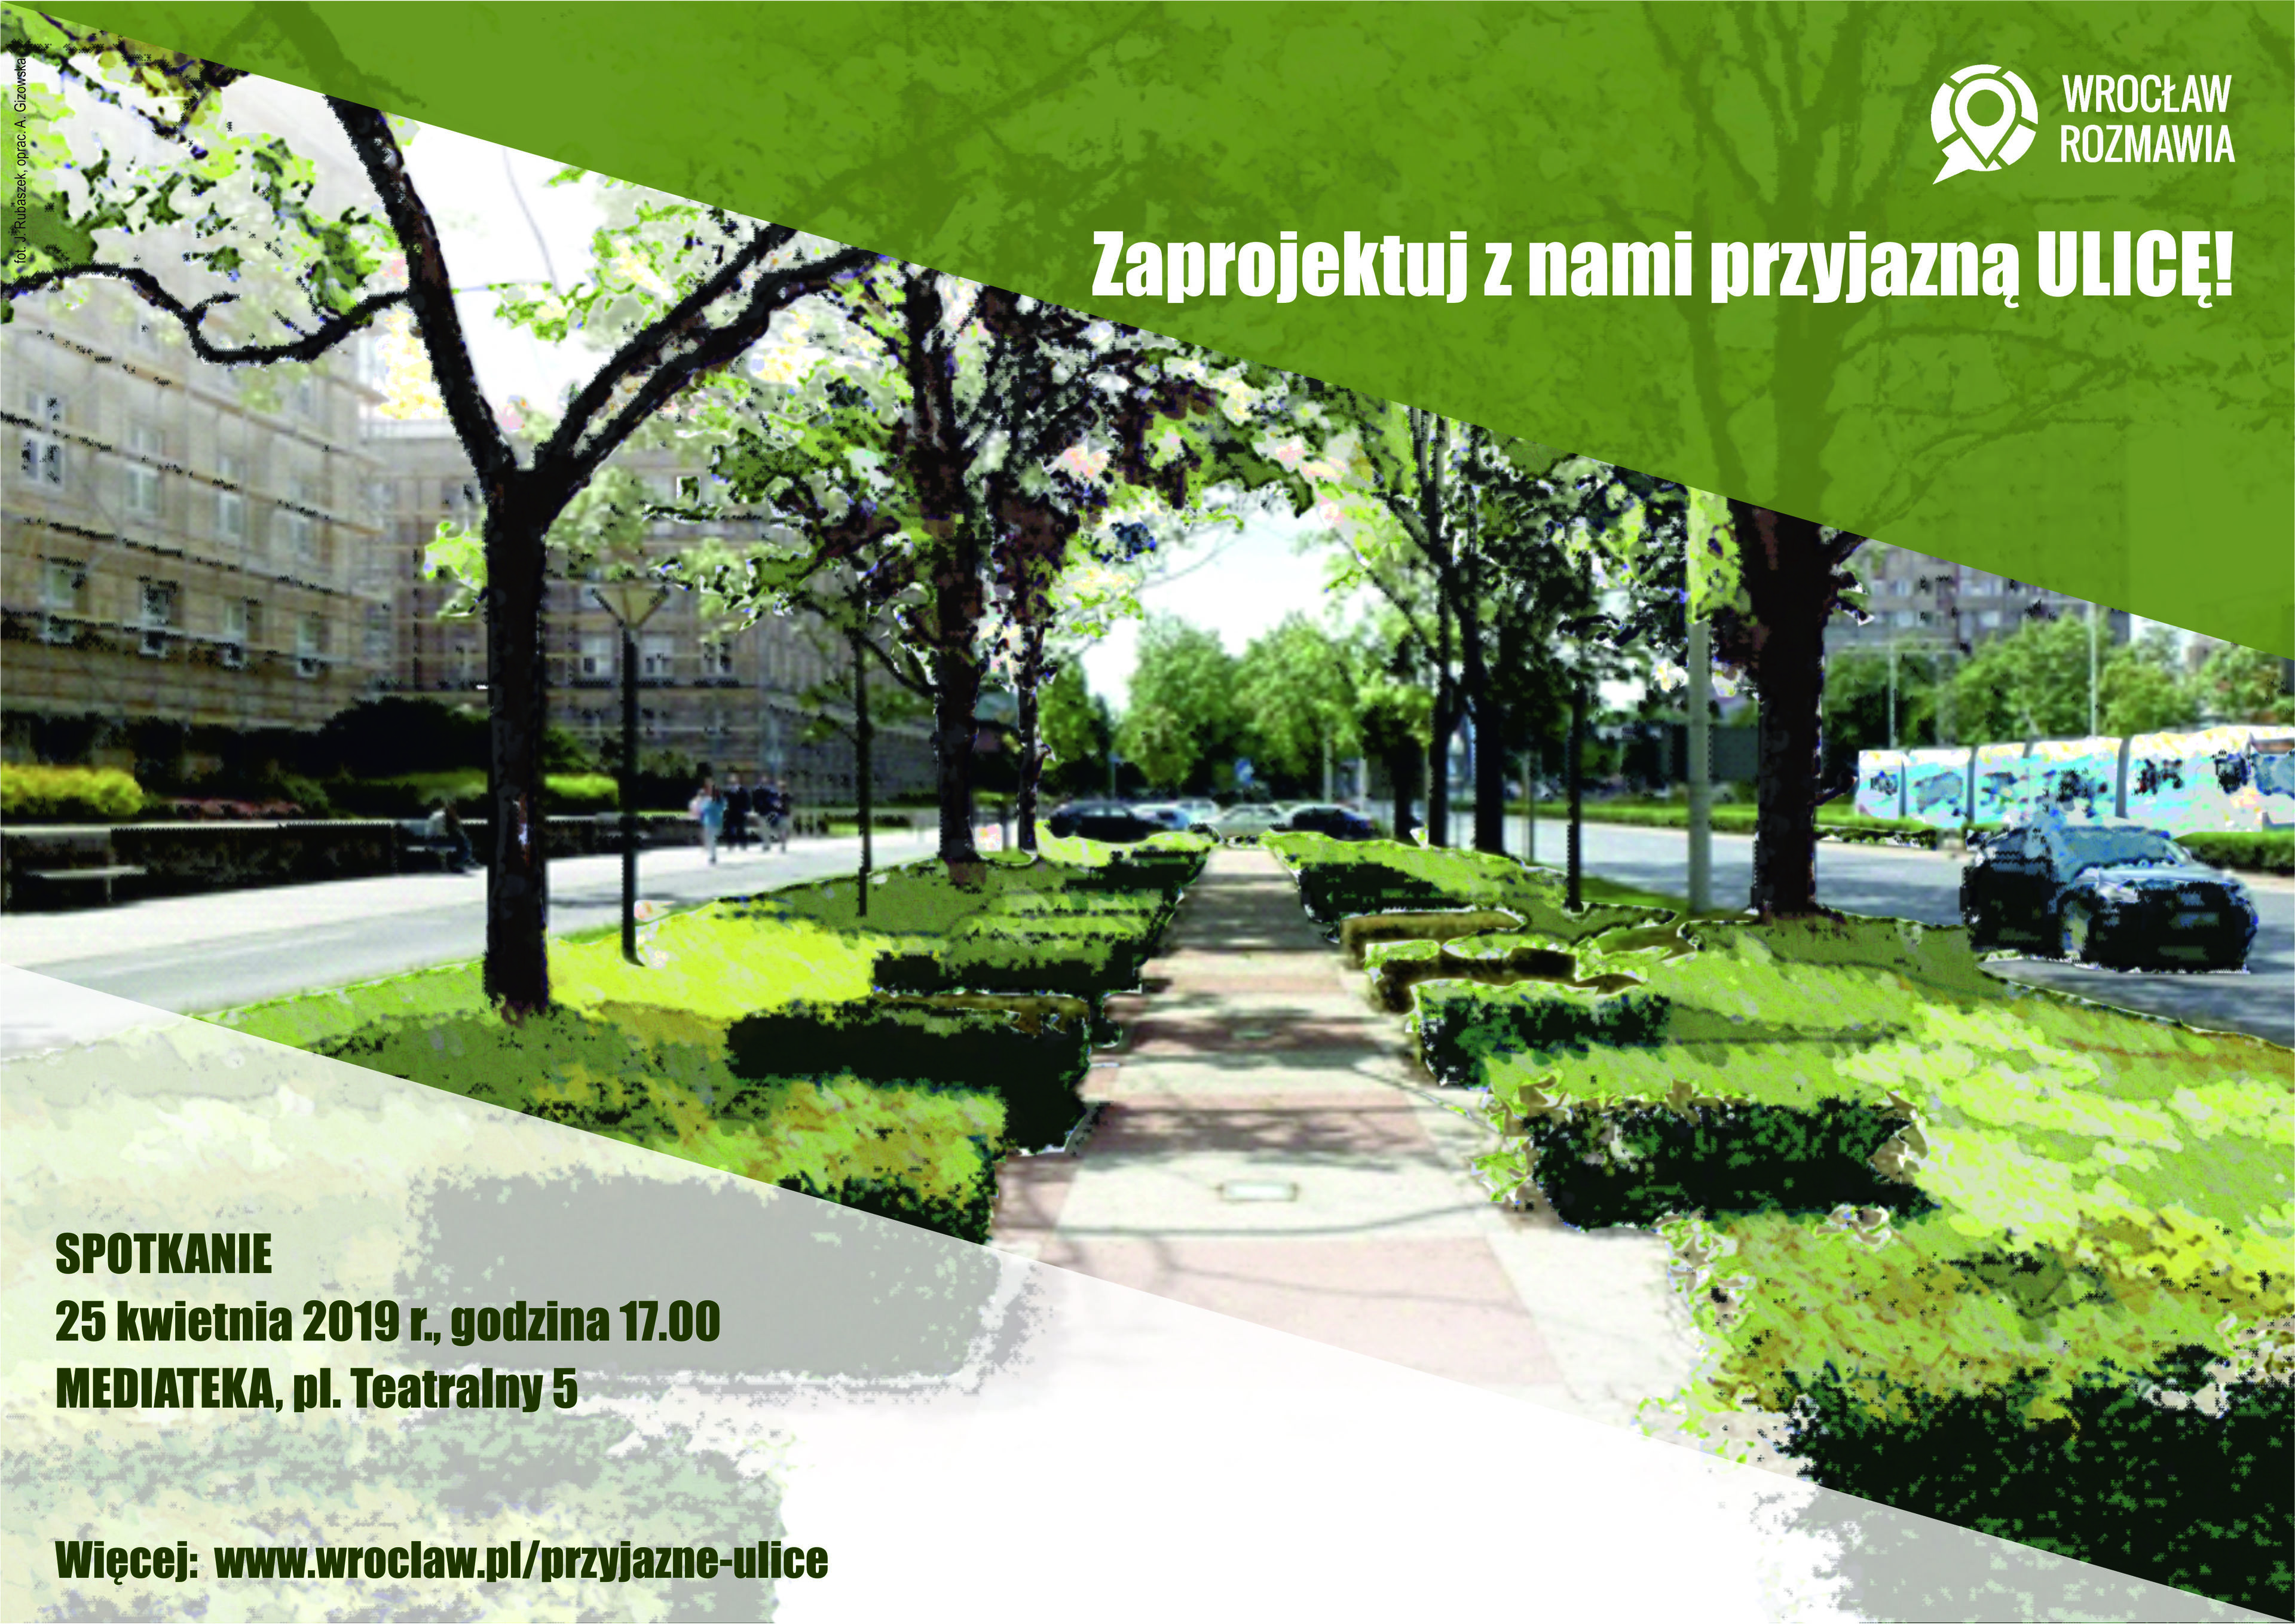 plakat konsultacji społecznych "Zaprojektuj z nami przyjazną ulicę"